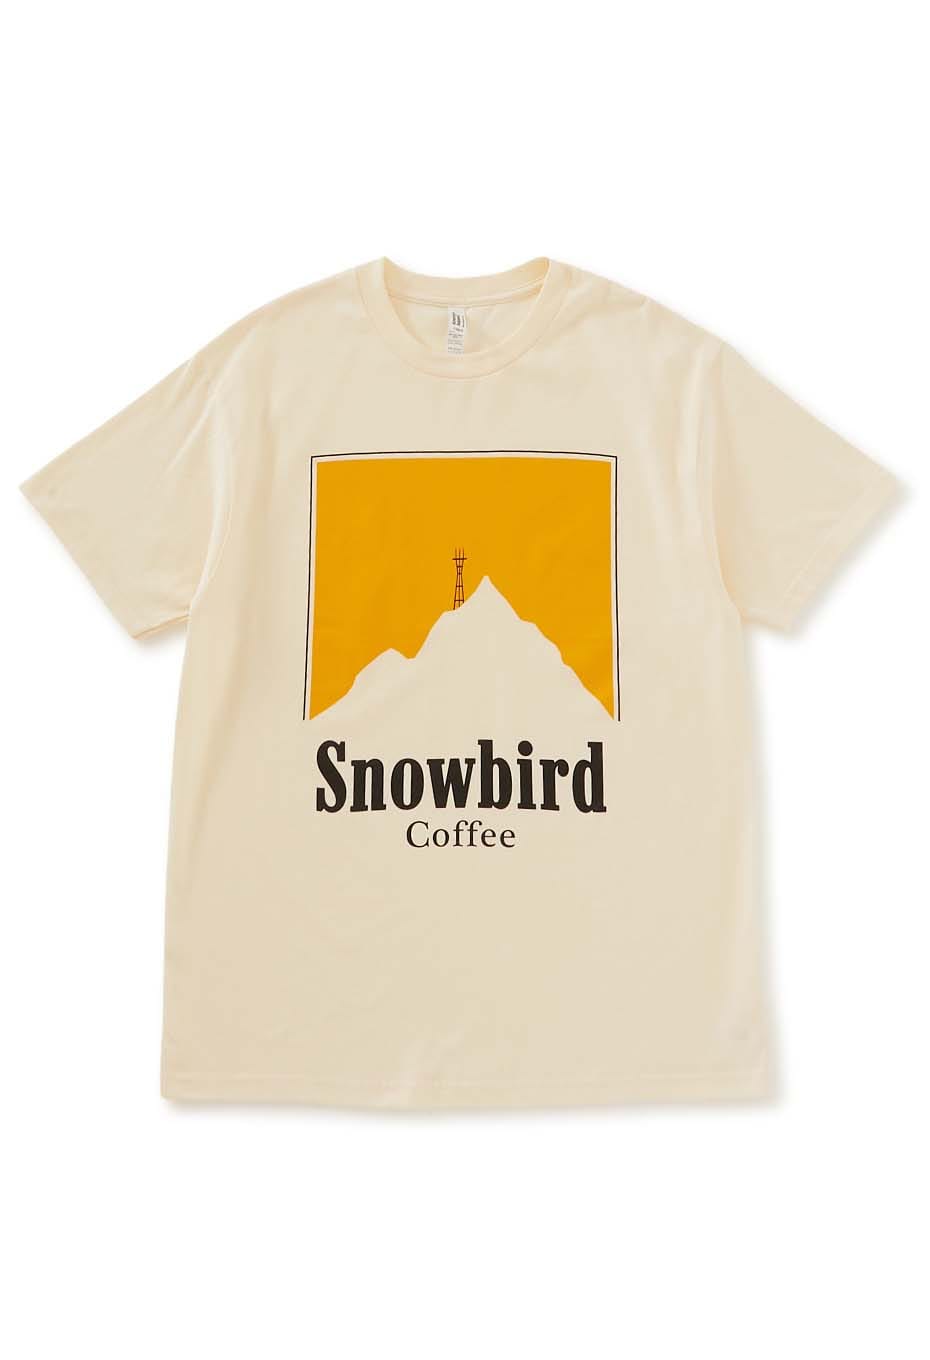 SNOWBIRD COFFEE /TWIN PEAKS Tシャツ